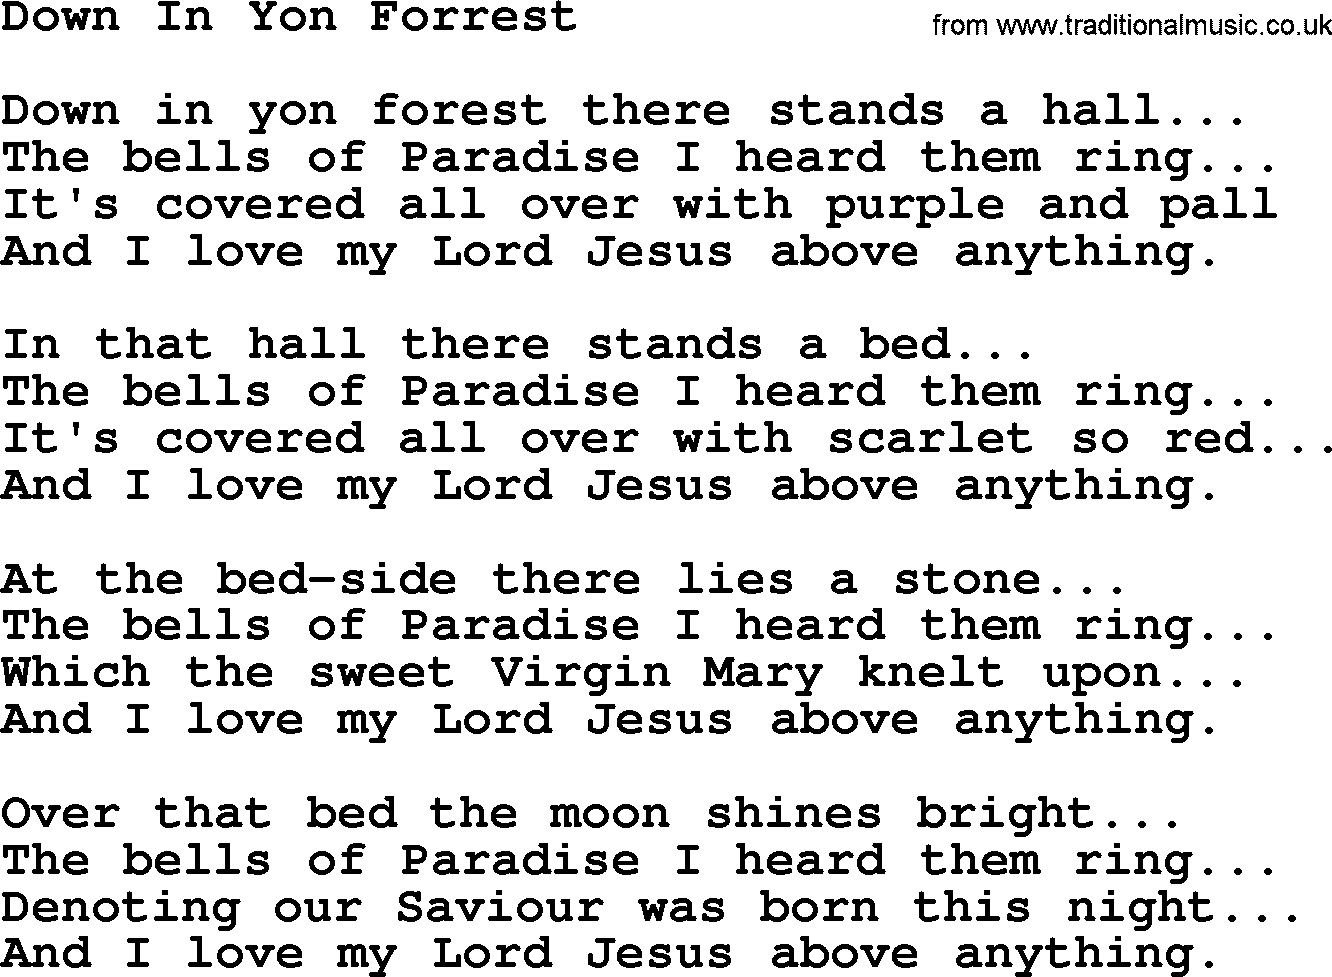 Joan Baez song Down In Yon Forrest, lyrics